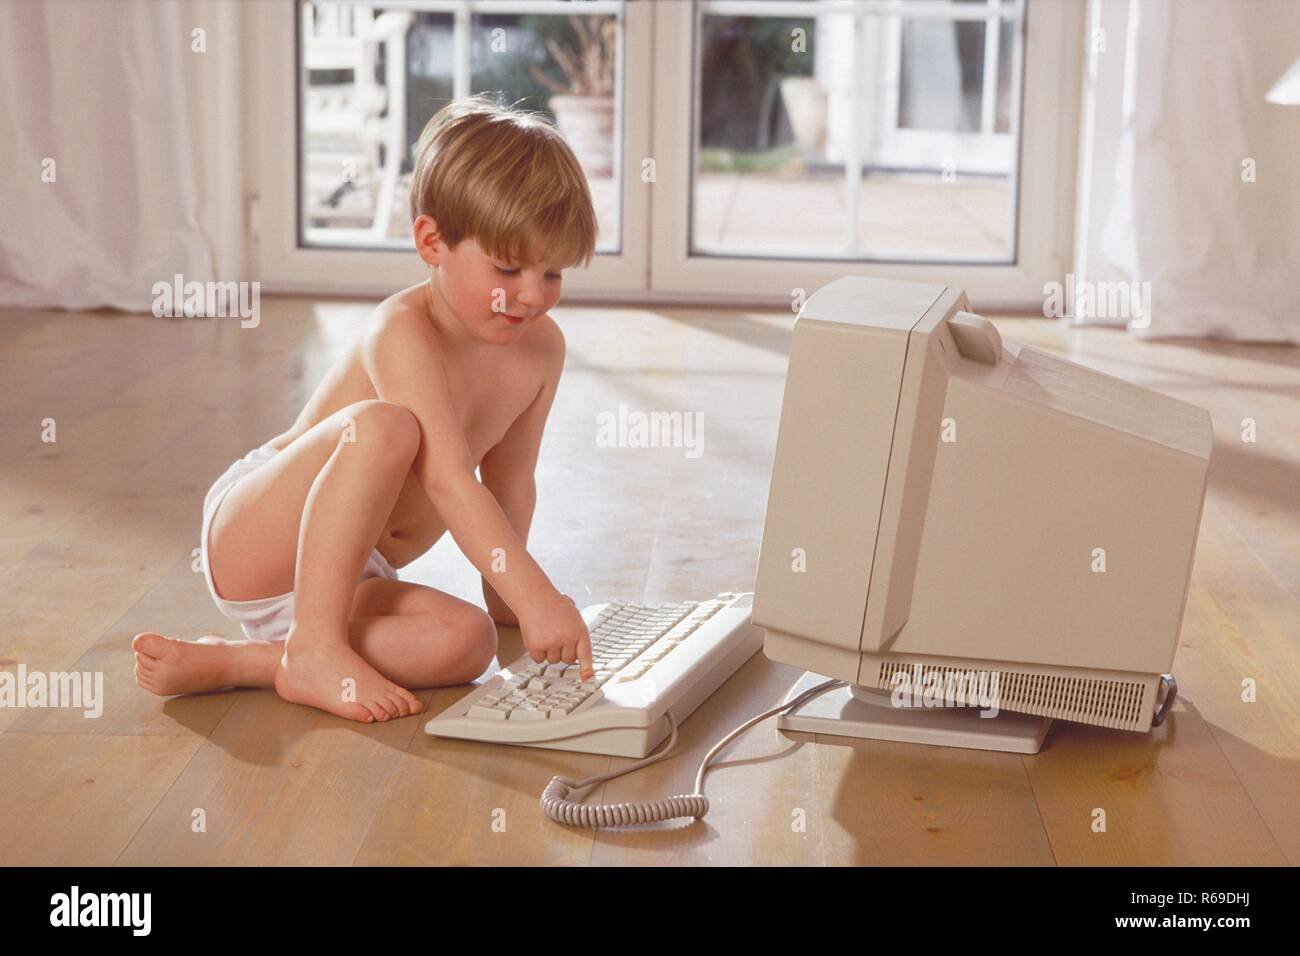 Ritratto, Innenraum, 6-jaehriger blondr Junge bekleidet nur mit Unterhose sitzt auf dem Holzboden und spielt am Computer Foto Stock